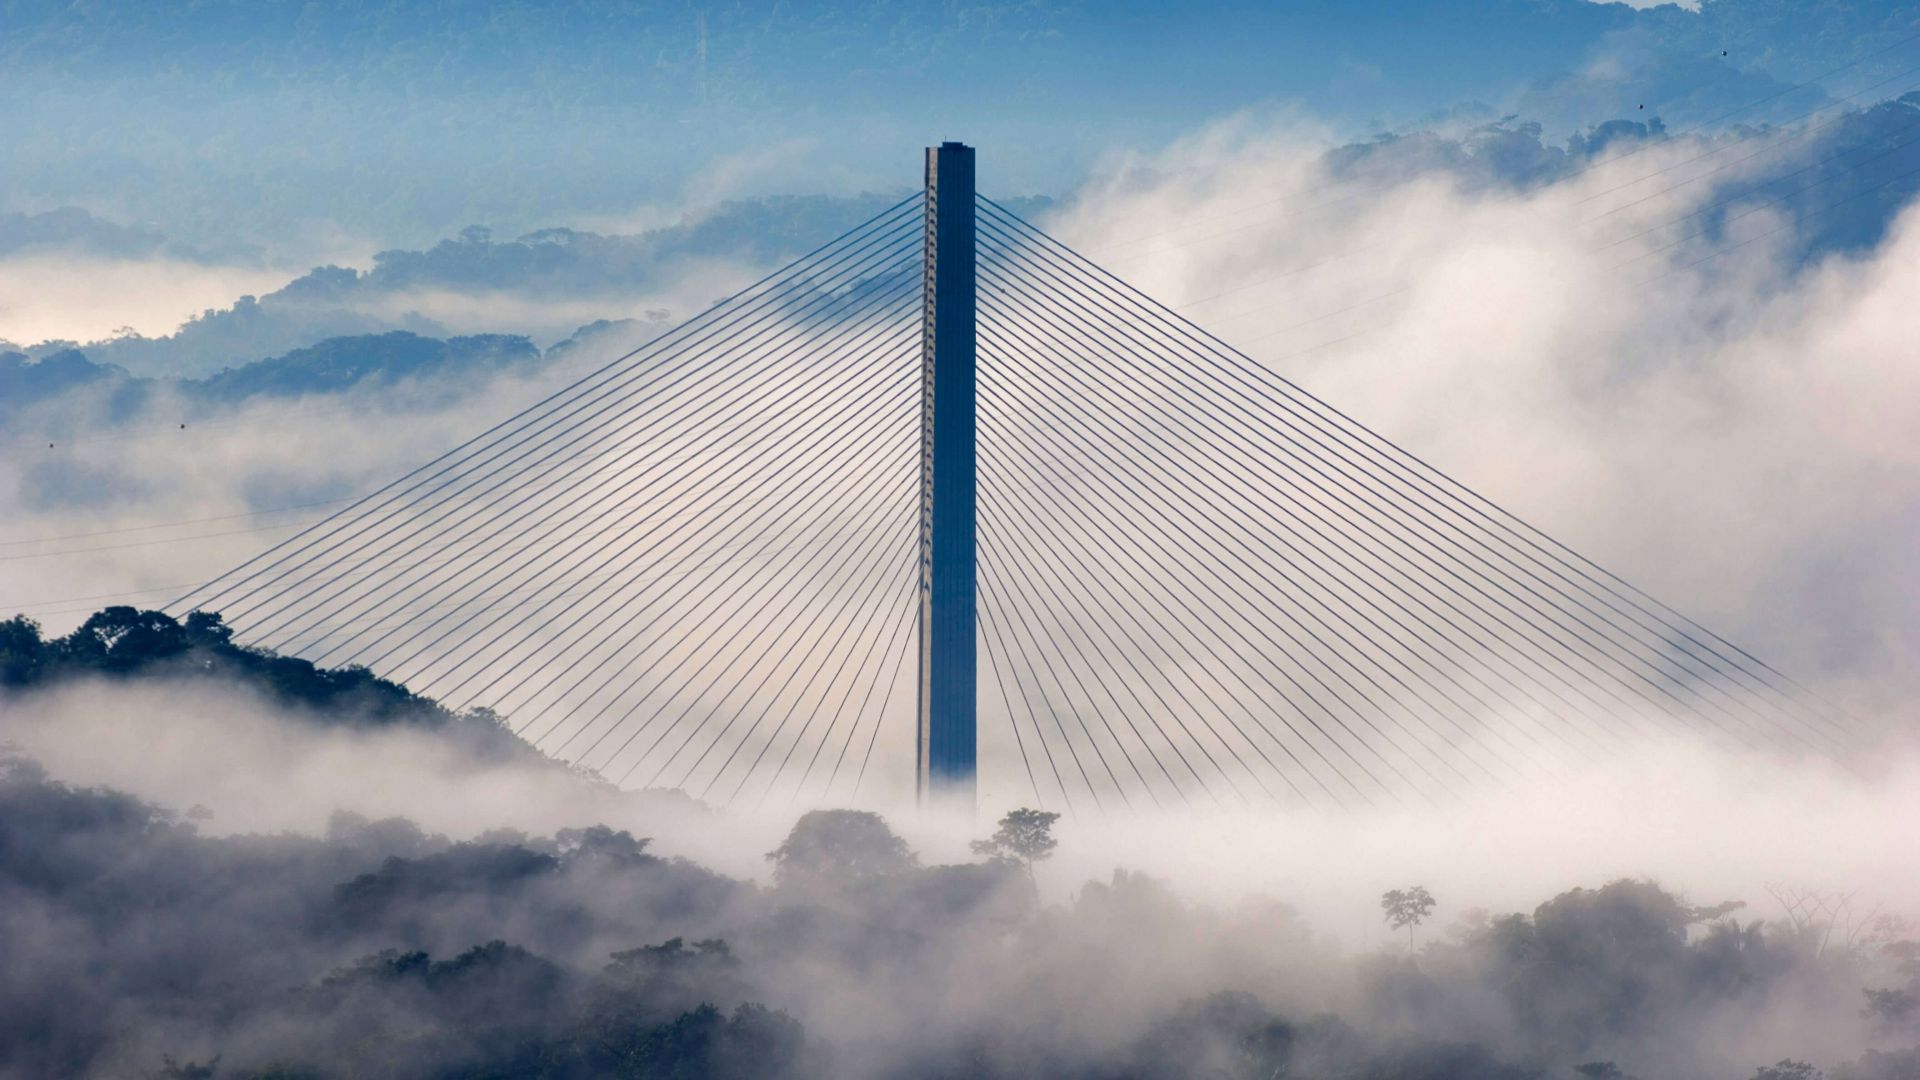 Centennial Bridge, Soberanía National Park, Panama, sky, clouds, 4K (horizontal)